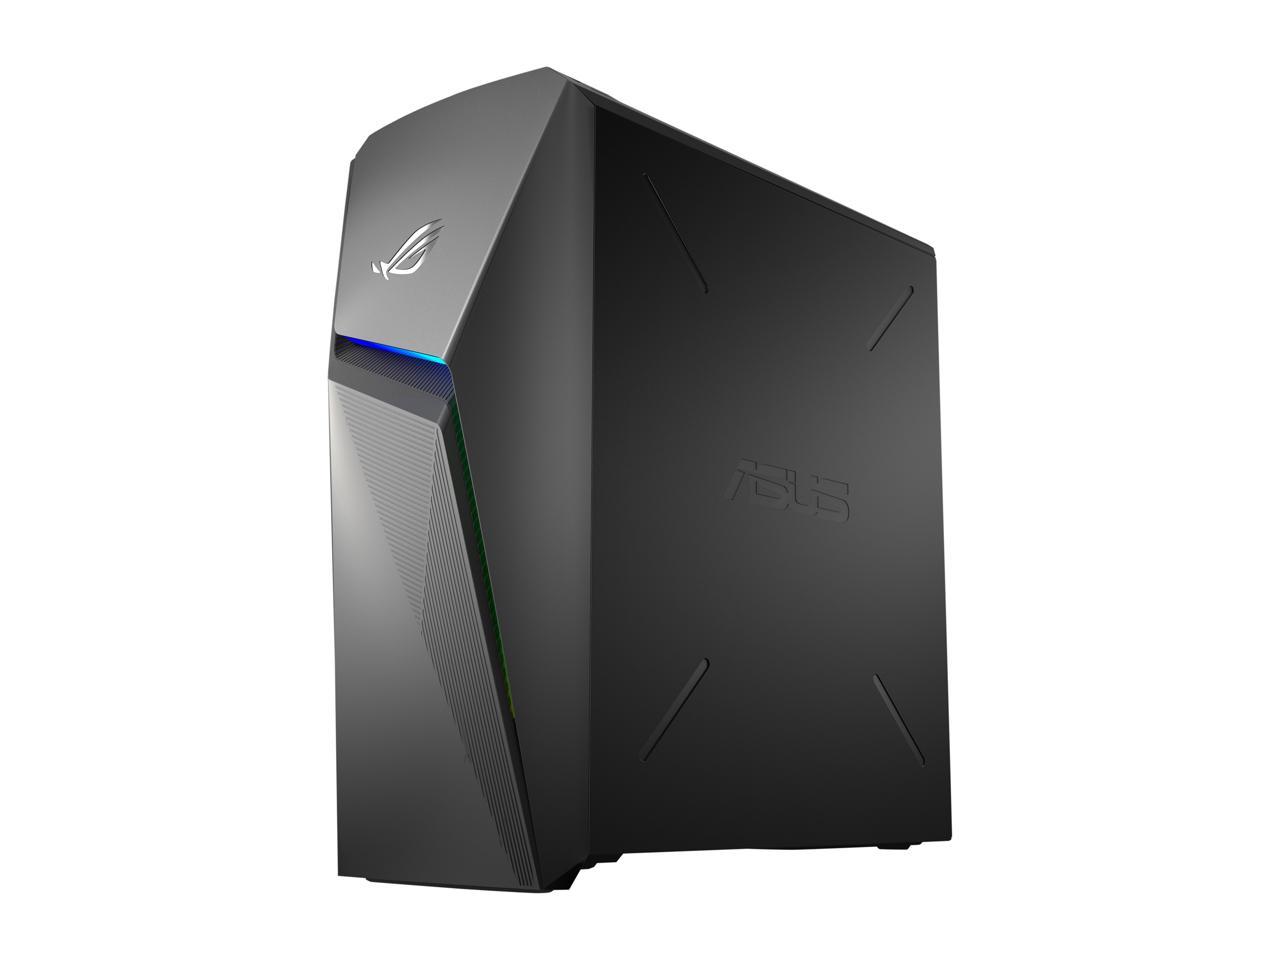 ASUS ROG Strix GL10DH - AMD Ryzen 7 3700X - GeForce RTX 2060 Super - 16 GB DDR4 - 512 GB SSD - Windows 10 Home - Gaming Desktop (GL10DH-NH764)